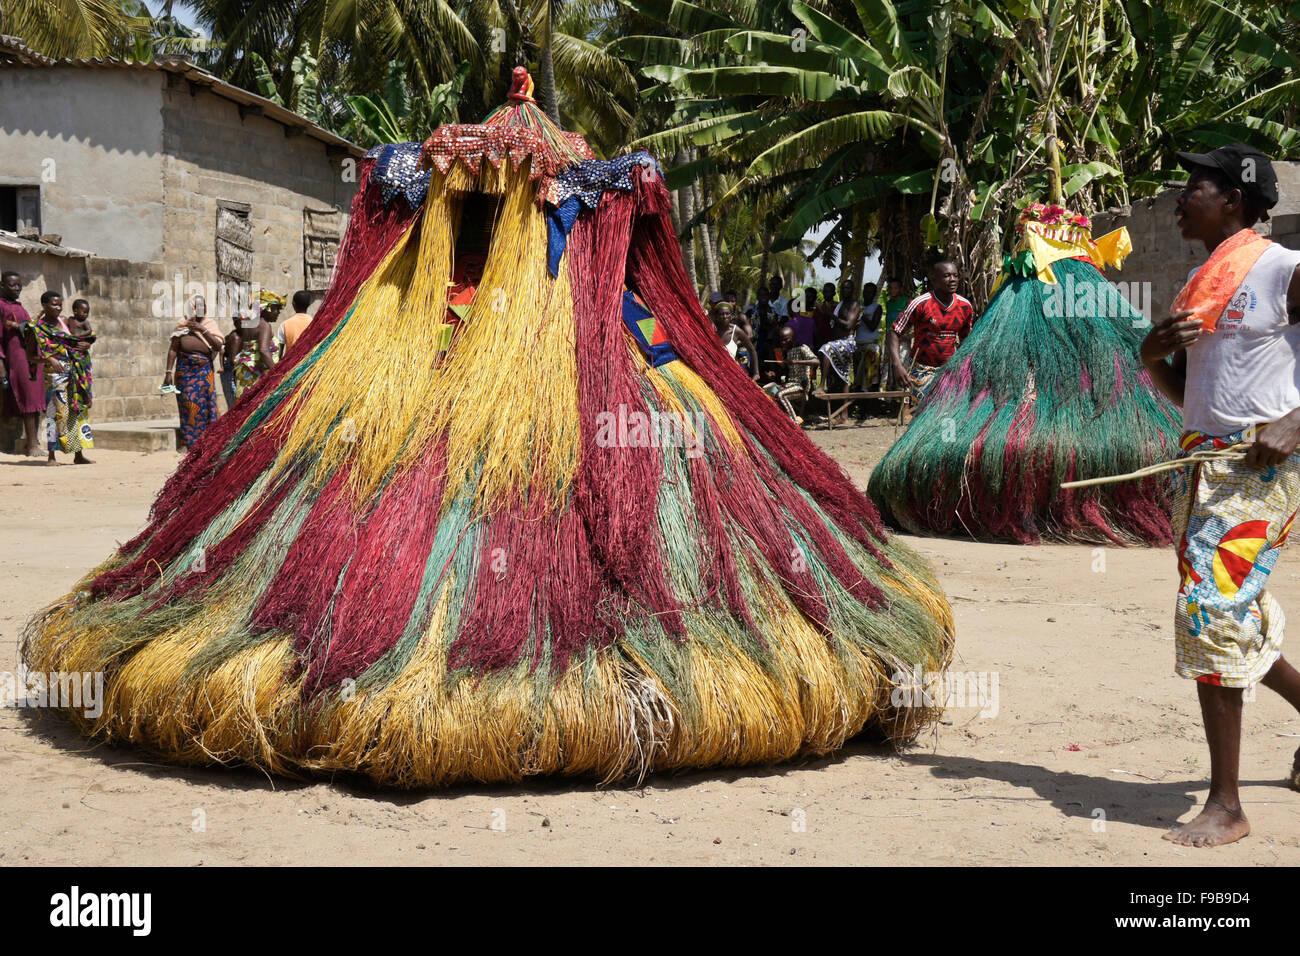 Zangbeto ceremony in Heve-Grand Popo village, Benin Stock Photo